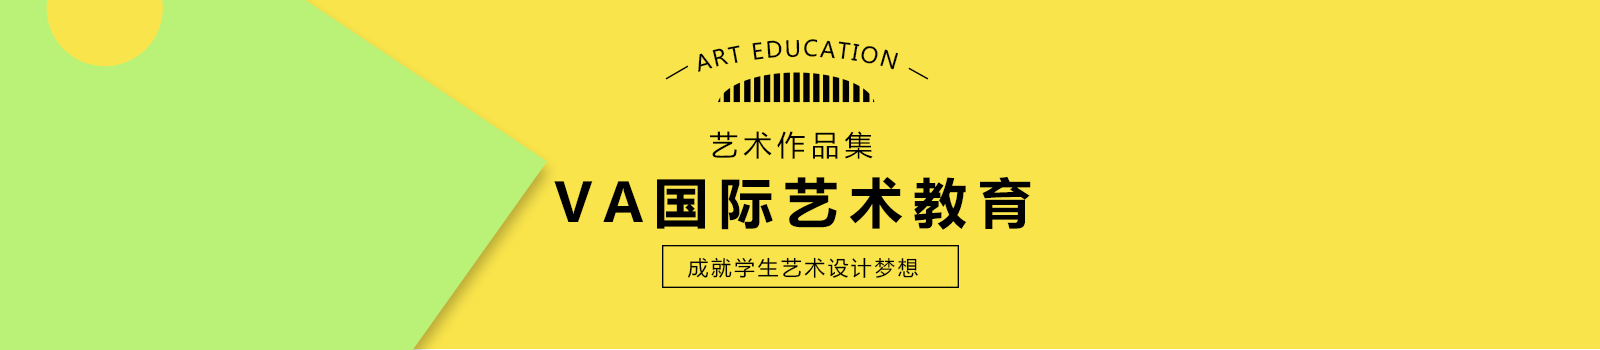 重庆VA国际艺术教育